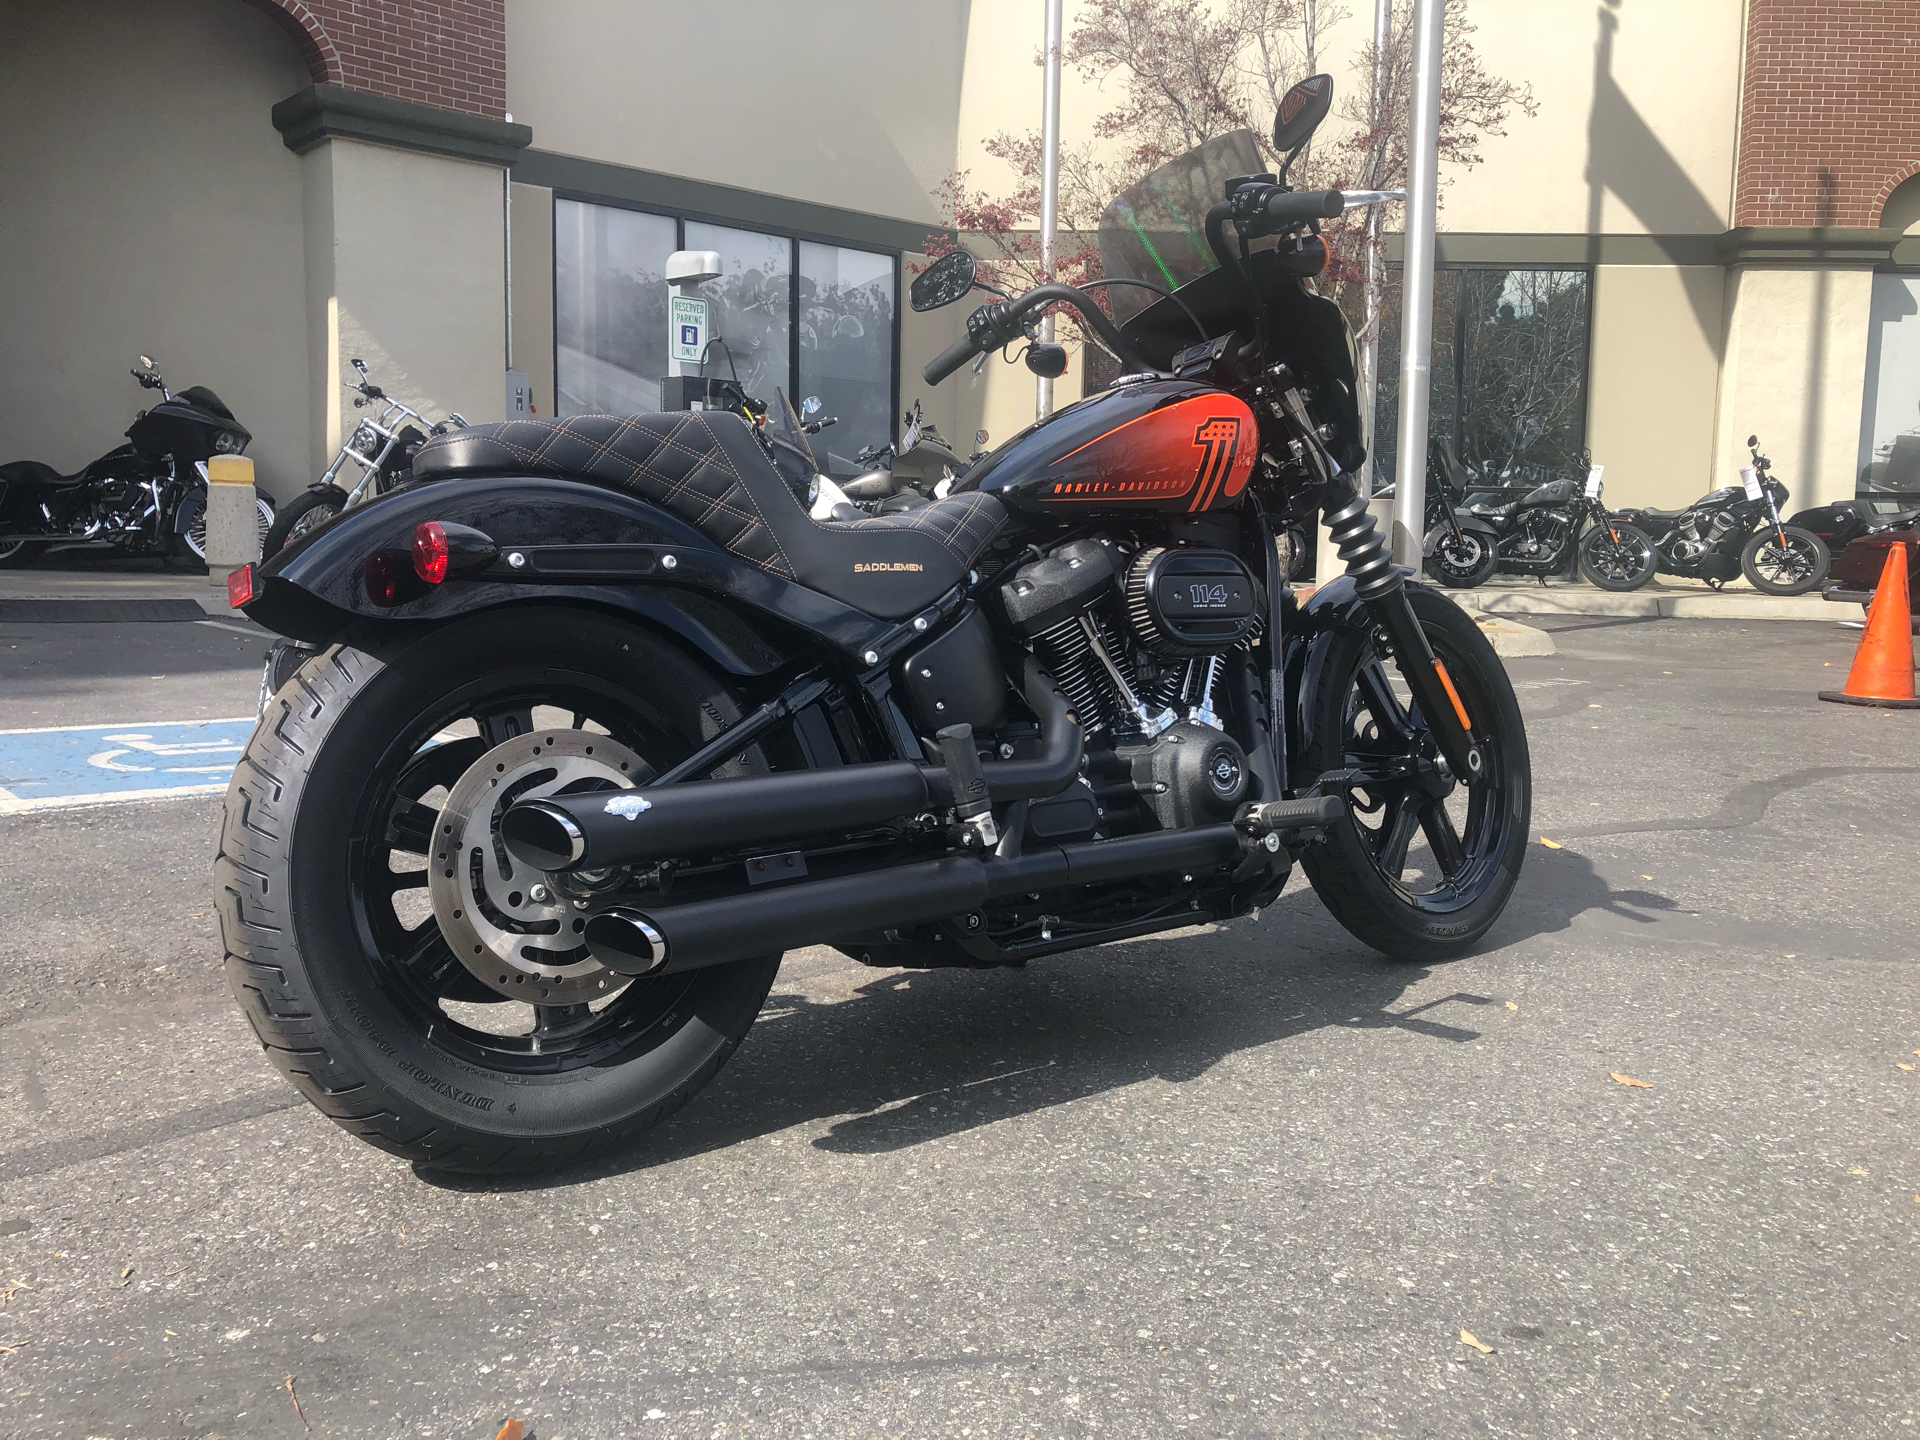 2022 Harley-Davidson Street Bob® 114 in San Jose, California - Photo 5